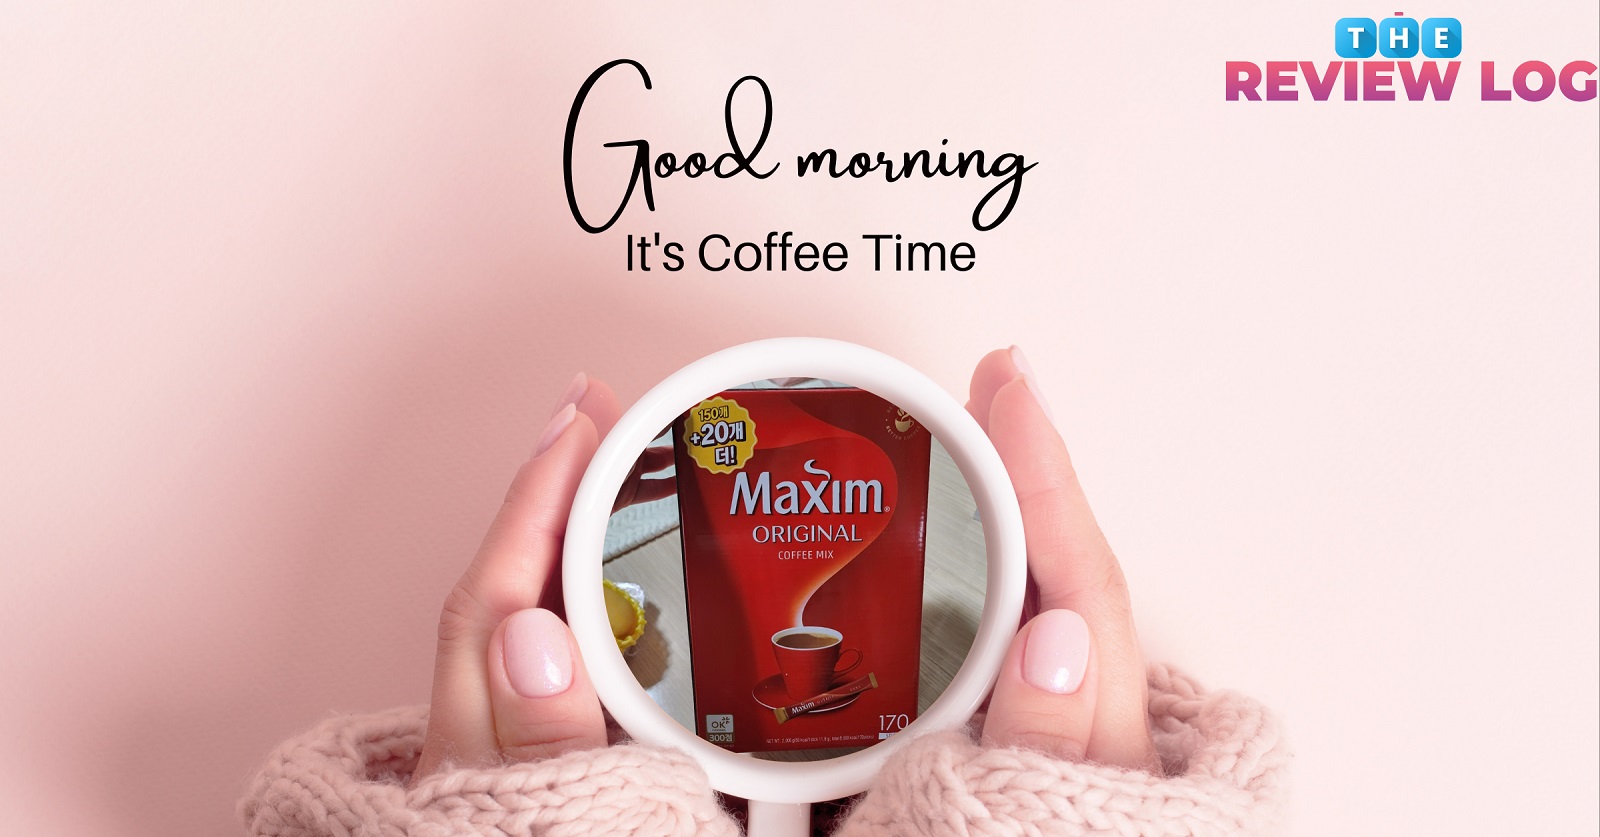 Maxim-original-coffee-mix-review